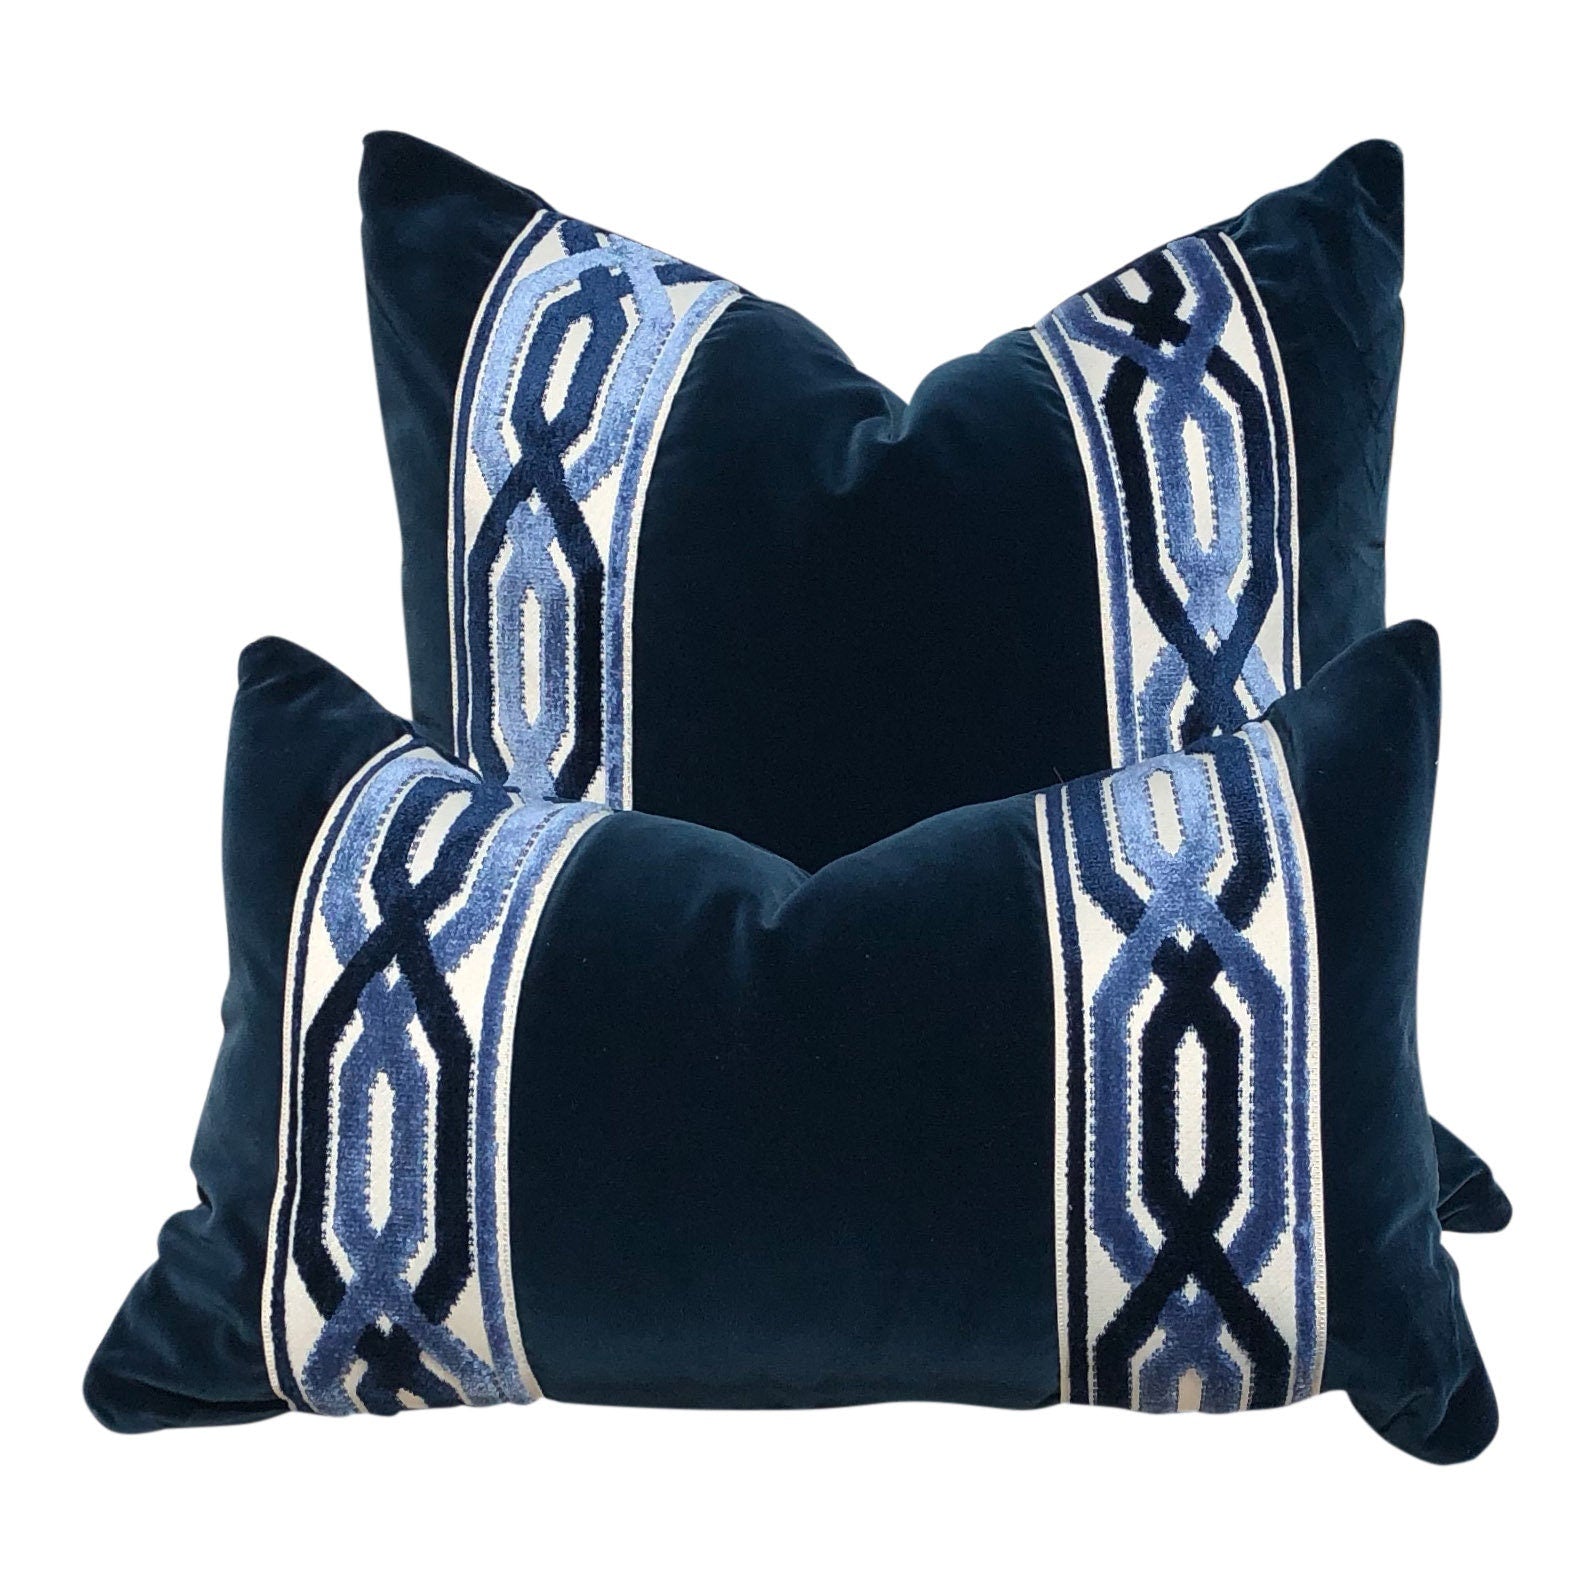 Velvet Pillow in Midnight Blue with Woven Velvet Trim, Lumbar Velvet Pillow, Designer Pillow Sham, Accent Velvet Pillow Cover